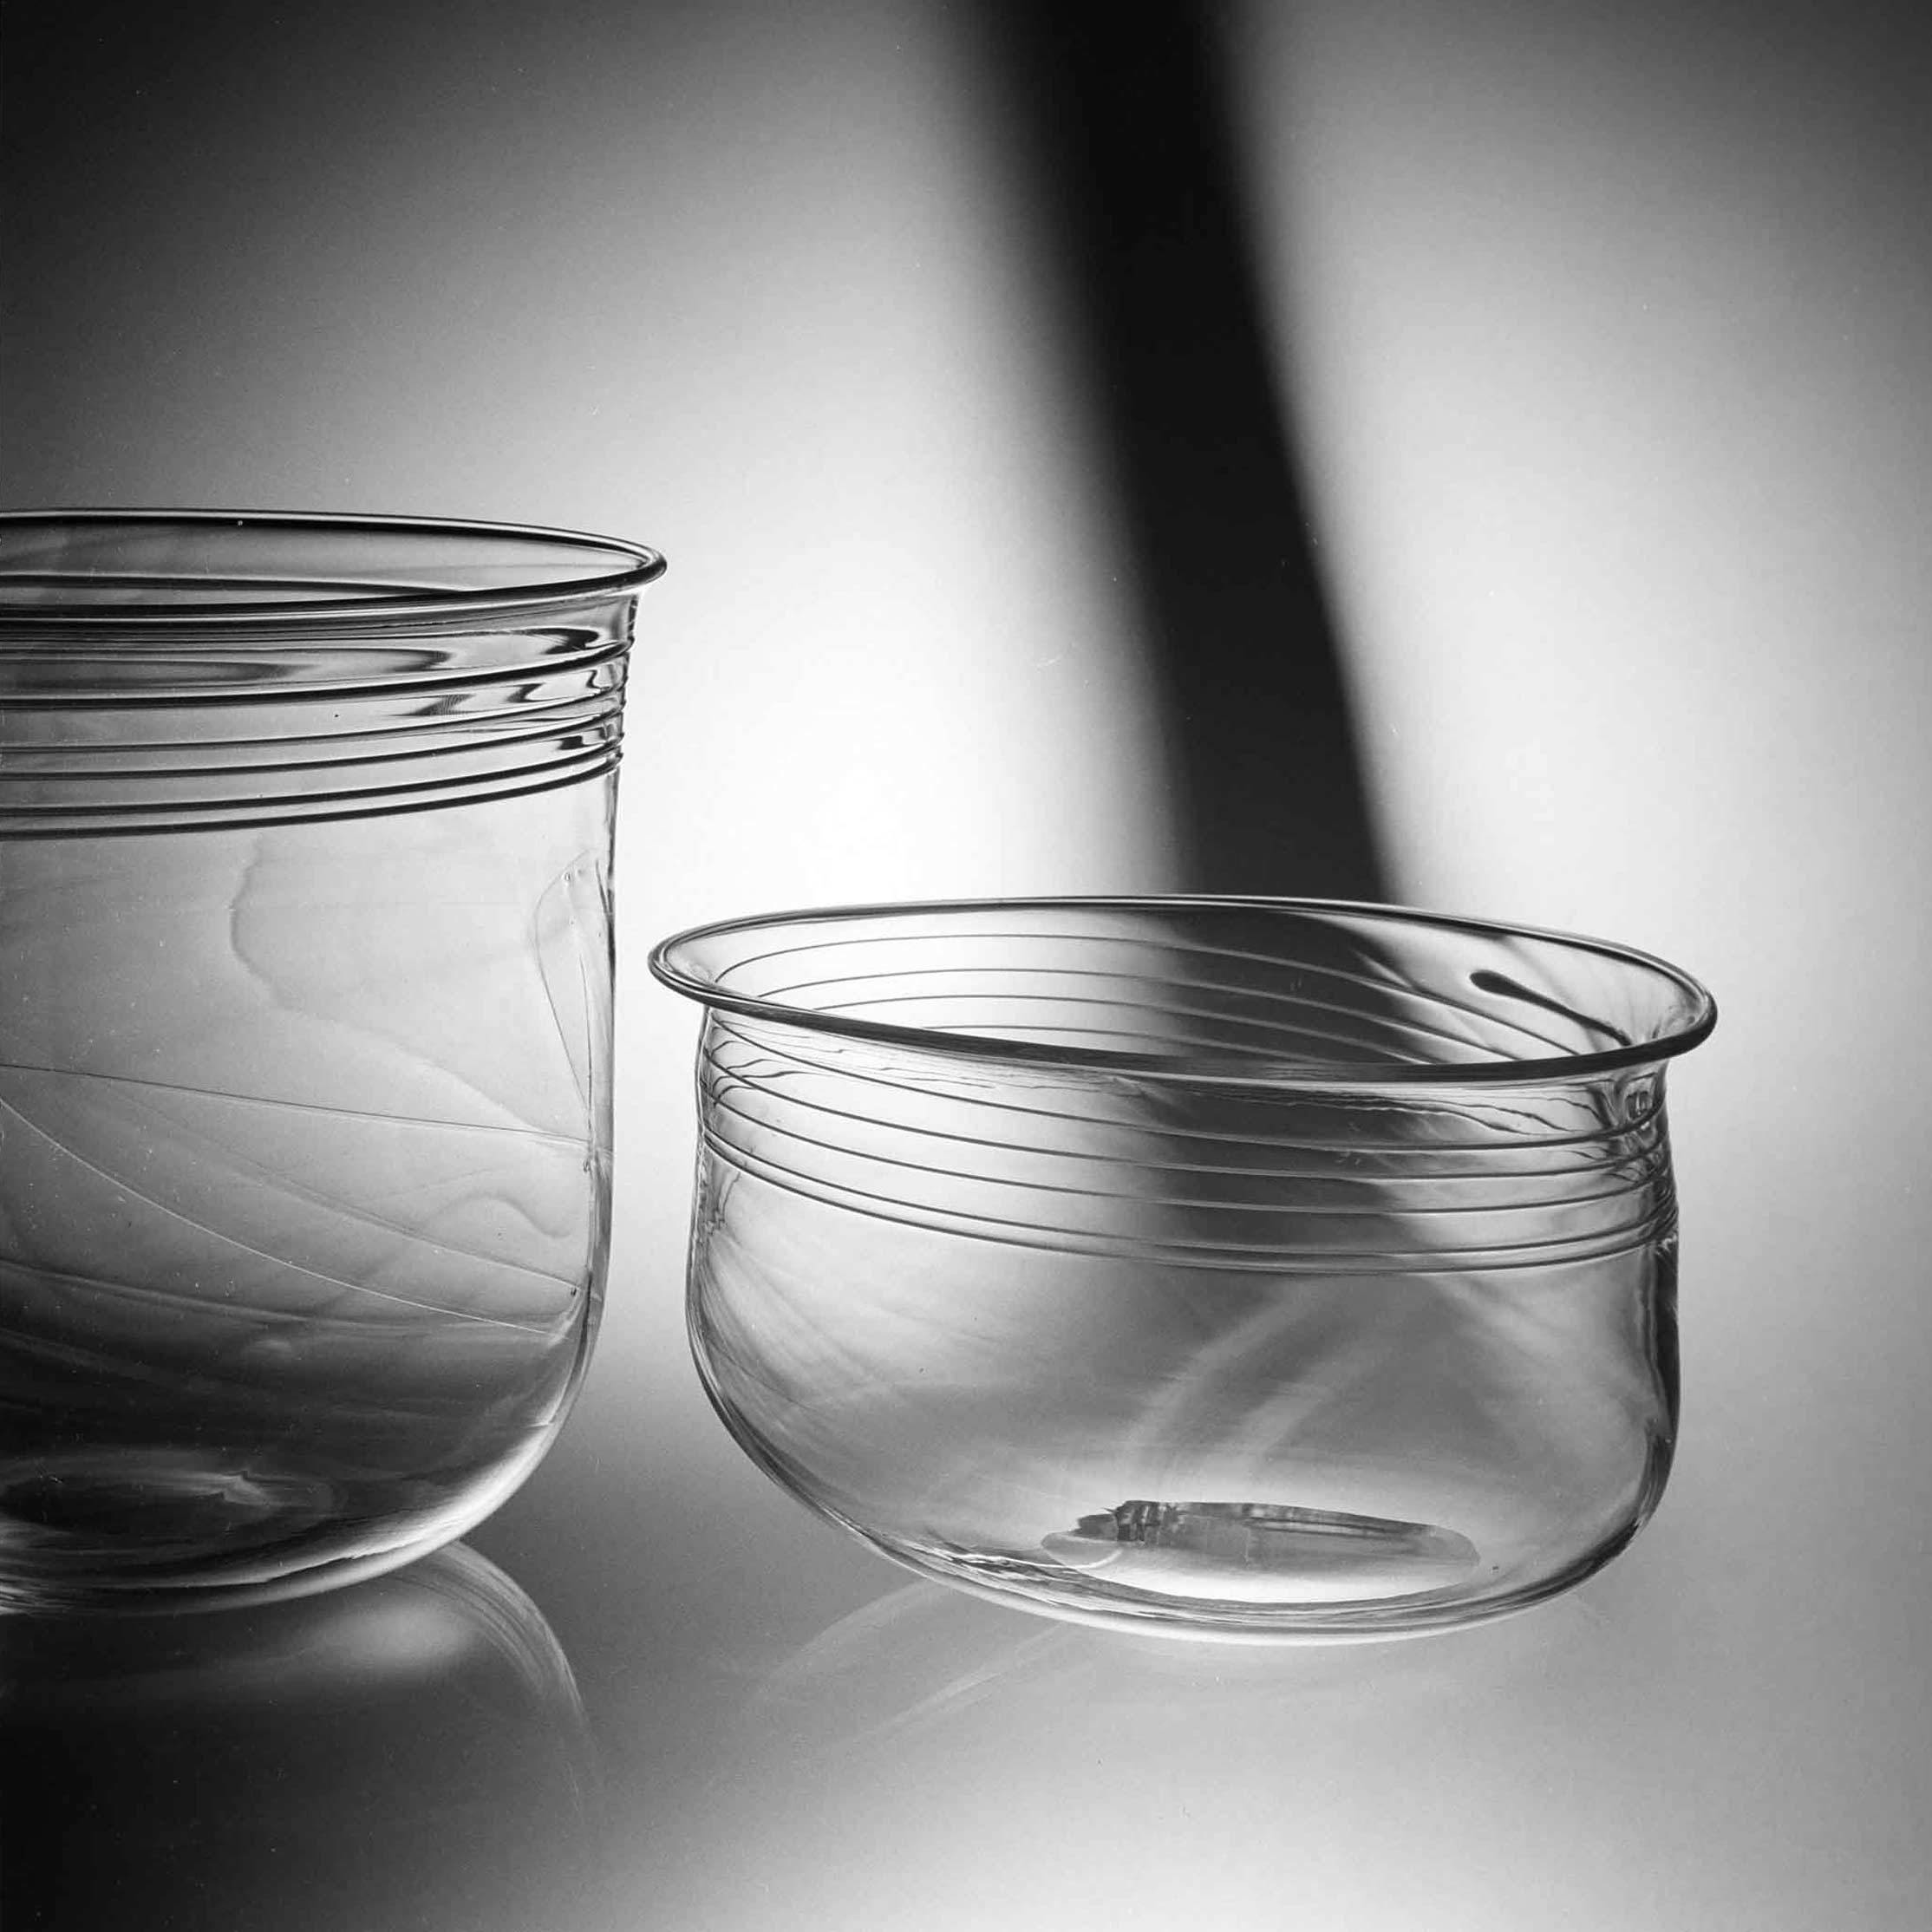 Skålar i rampigt glas, Evald Kraft, bitr hyttmästare, foto: John Selbing